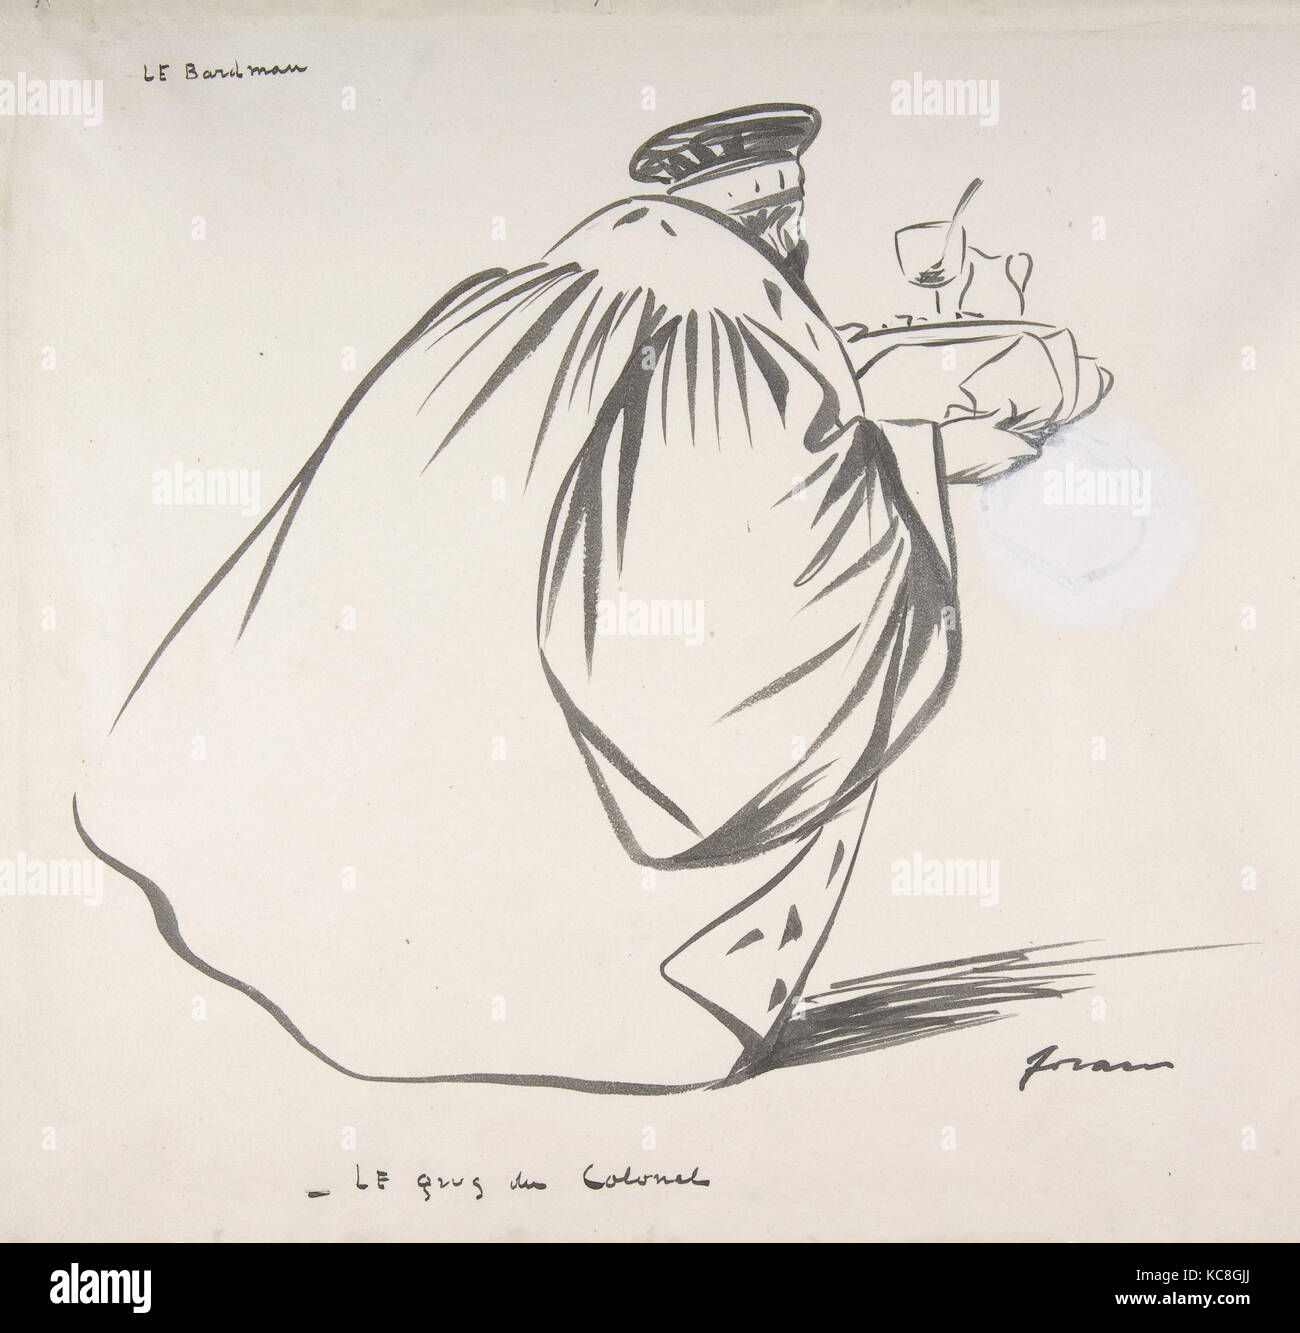 Caricature de Jean-Louis Forain (1852-1931). "L'assaut allemand' 18-06-1918  France - la seconde guerre mondiale, Paris 1. Bibliothèque nationale Photo  Stock - Alamy